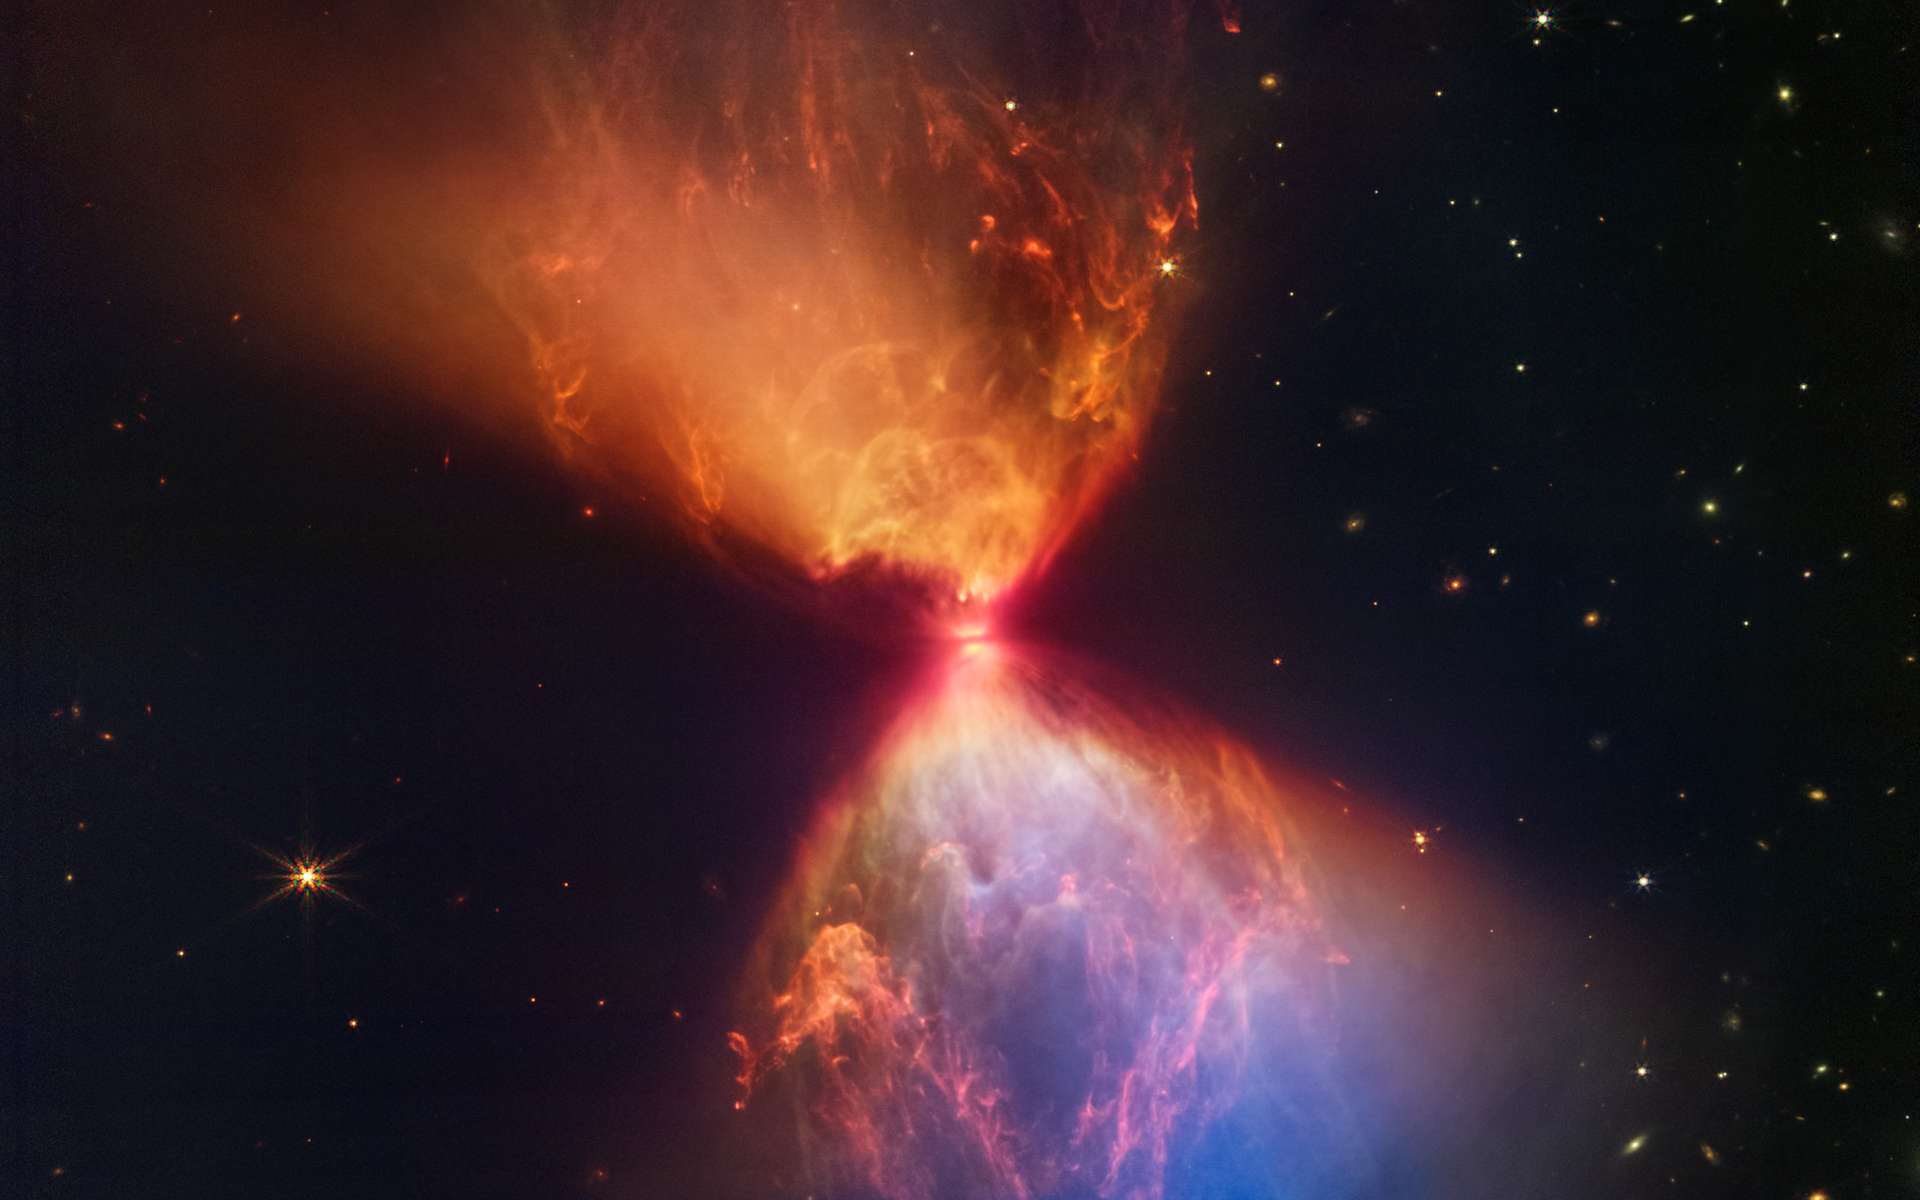 Le télescope James-Webb nous envoie une superbe image d'un sablier cosmique